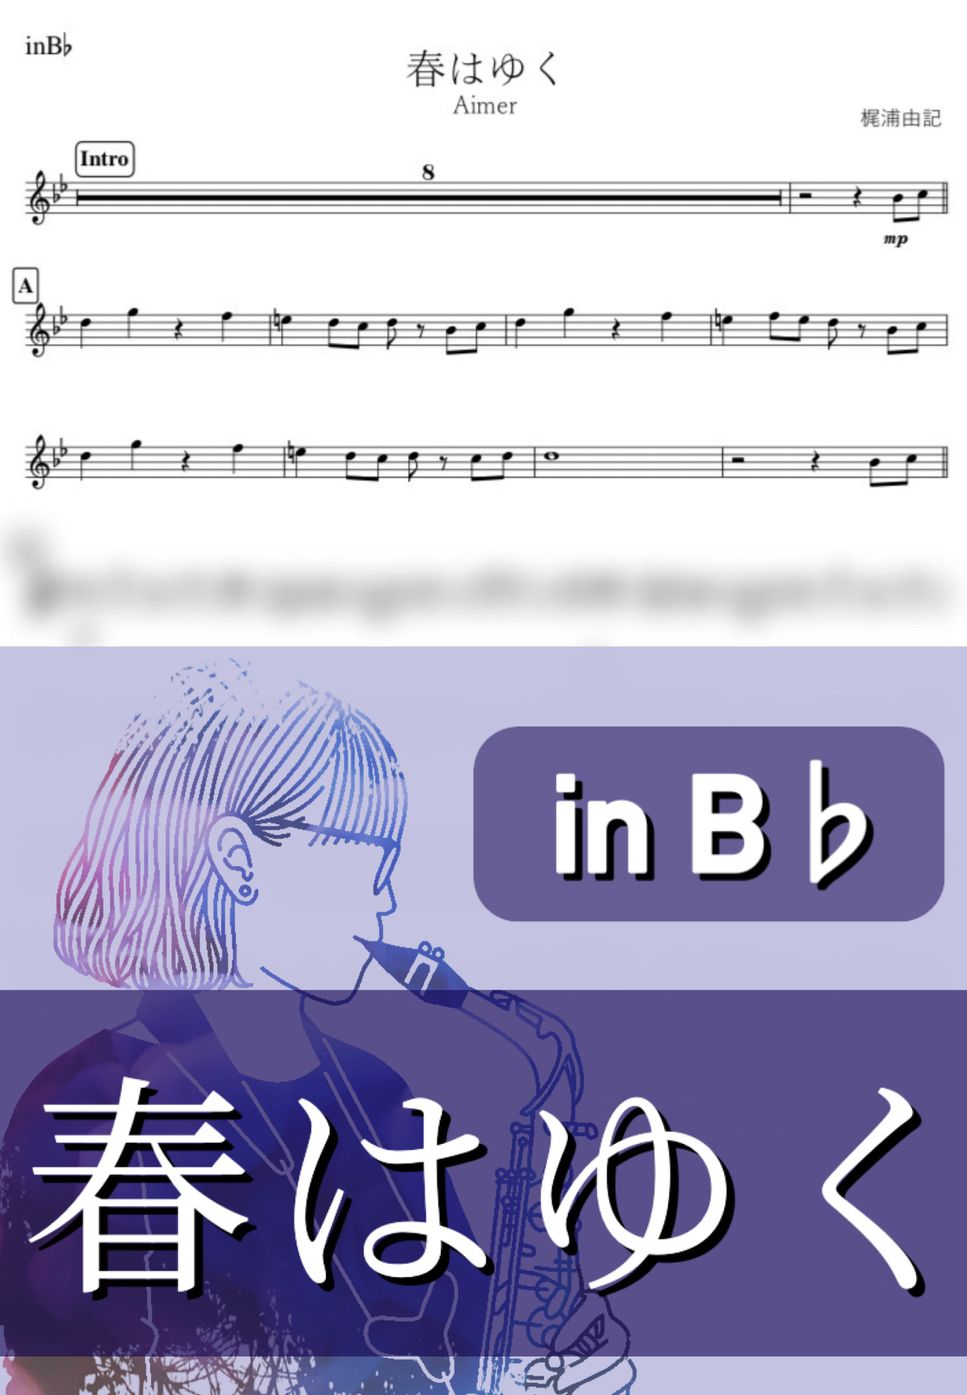 Aimer - 春はゆく (B♭) by kanamusic